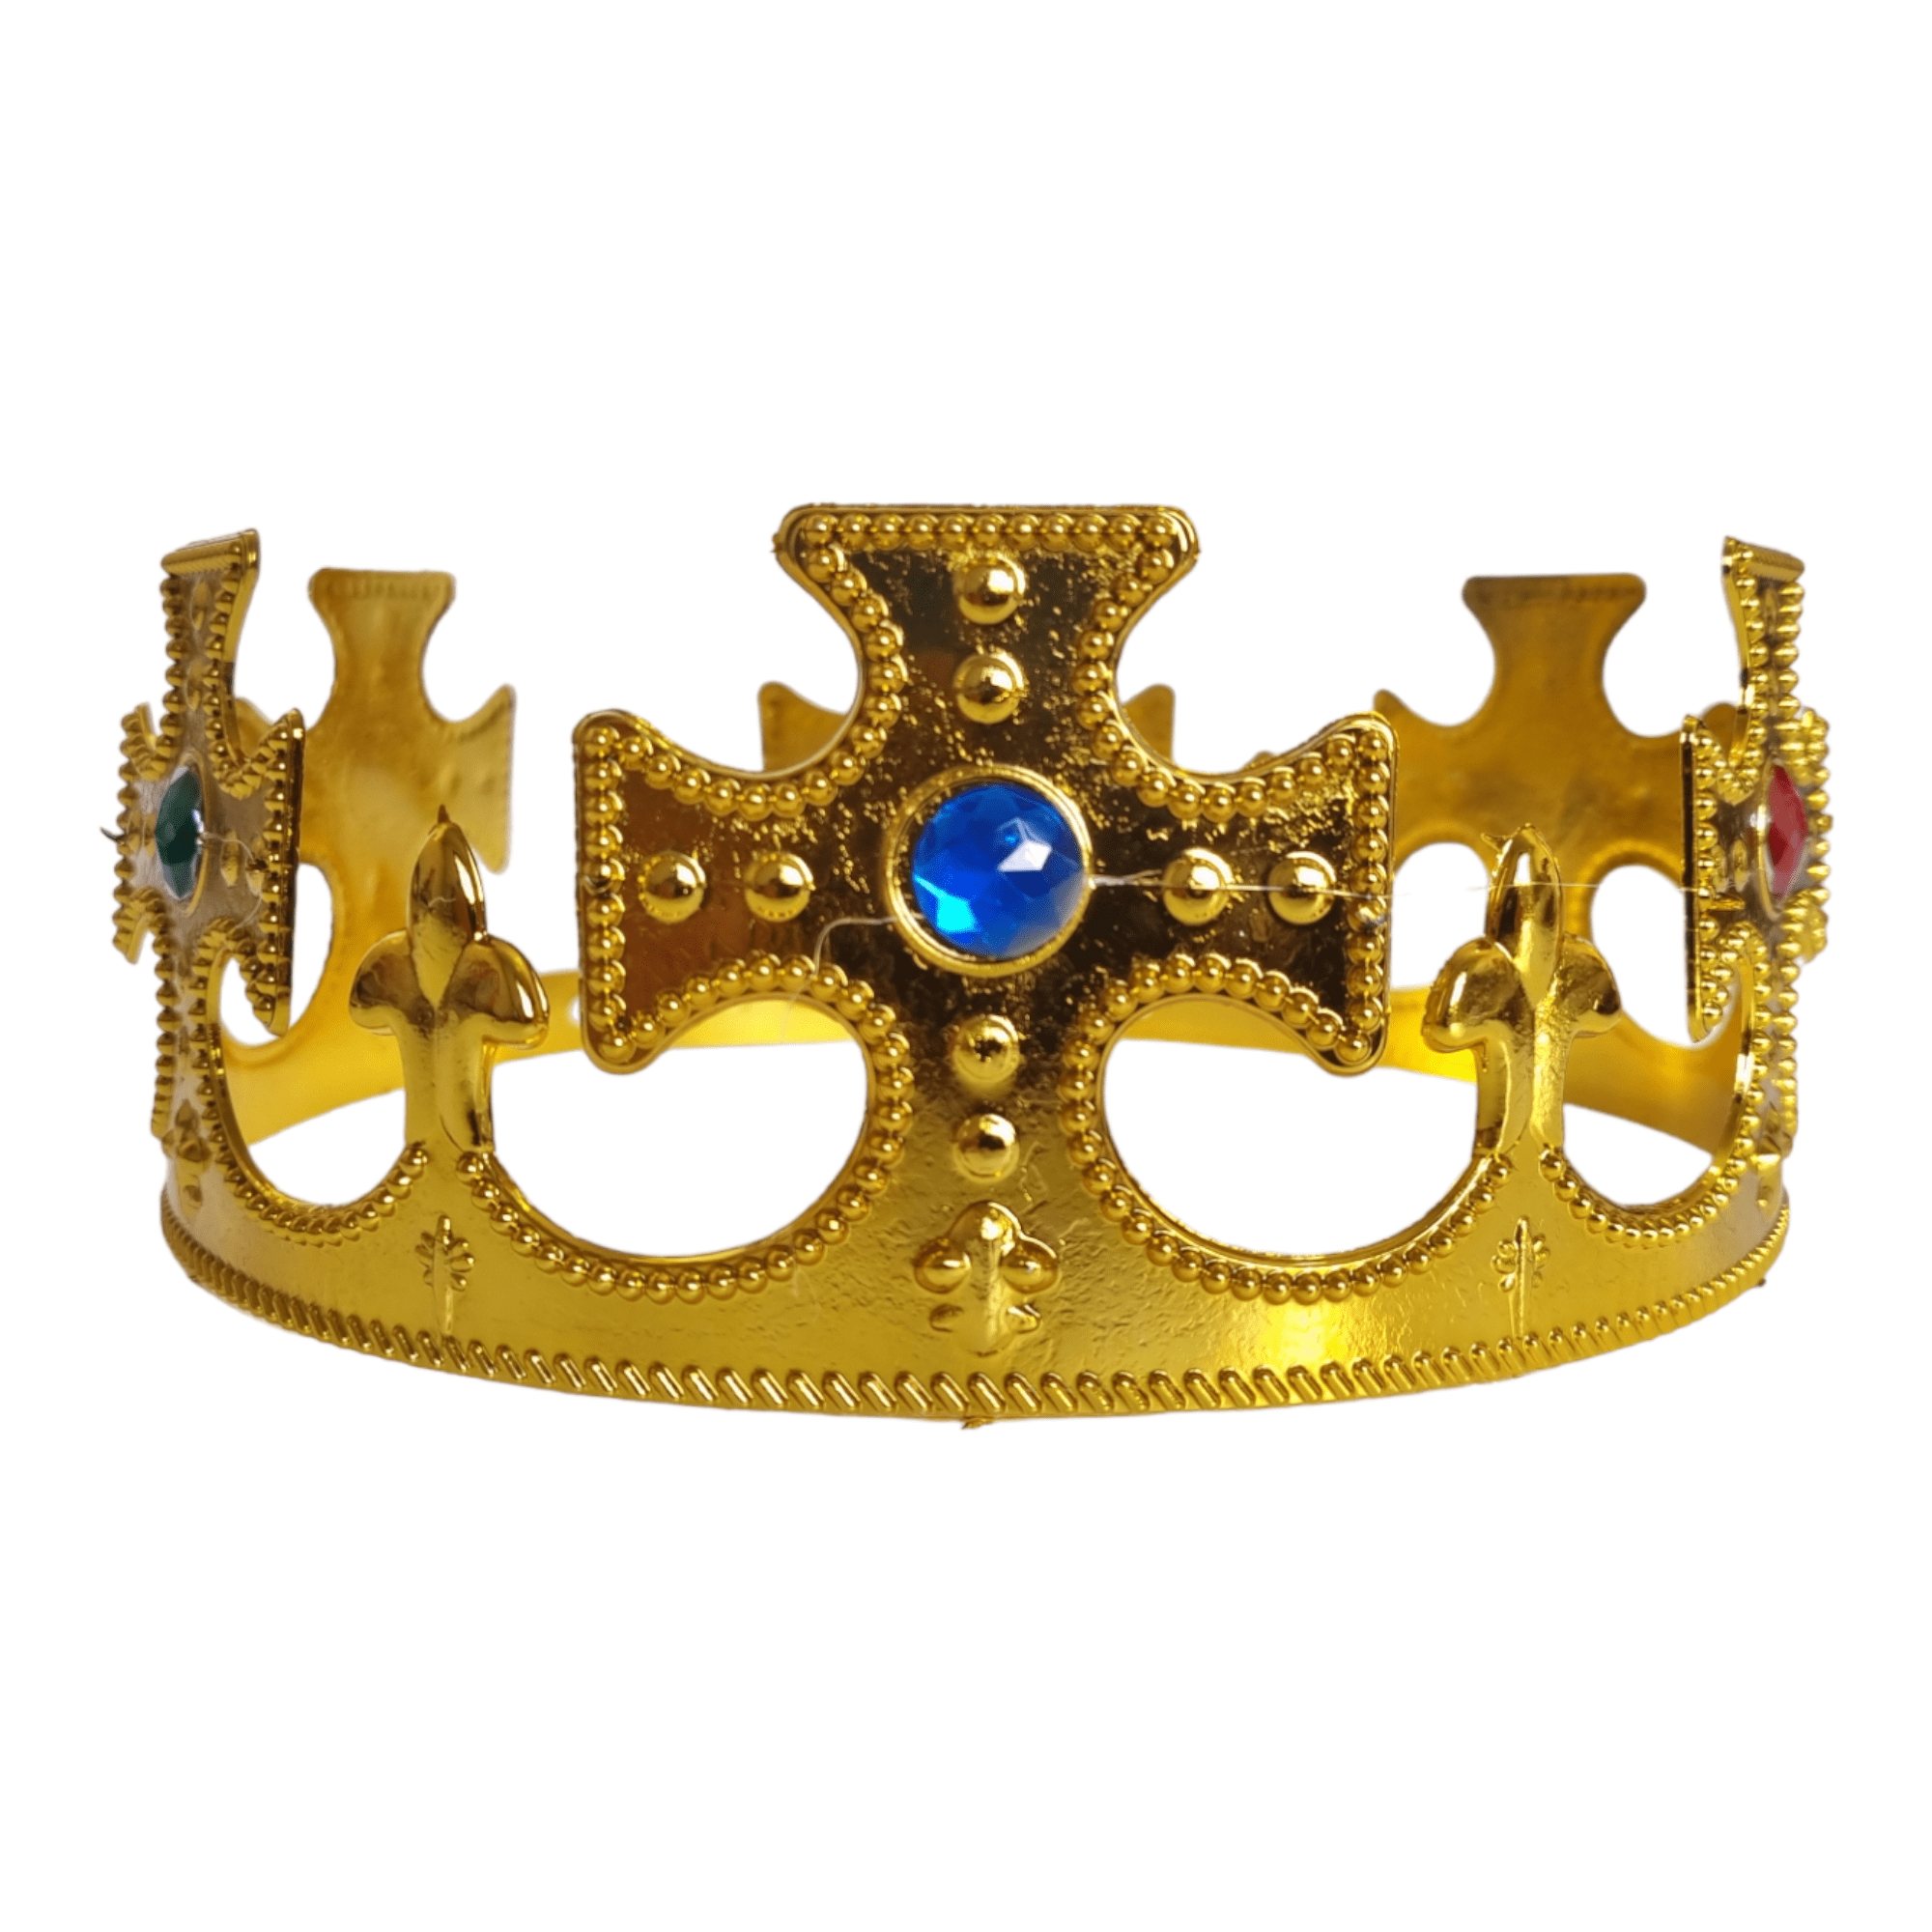 Corona de rey dorada y plata